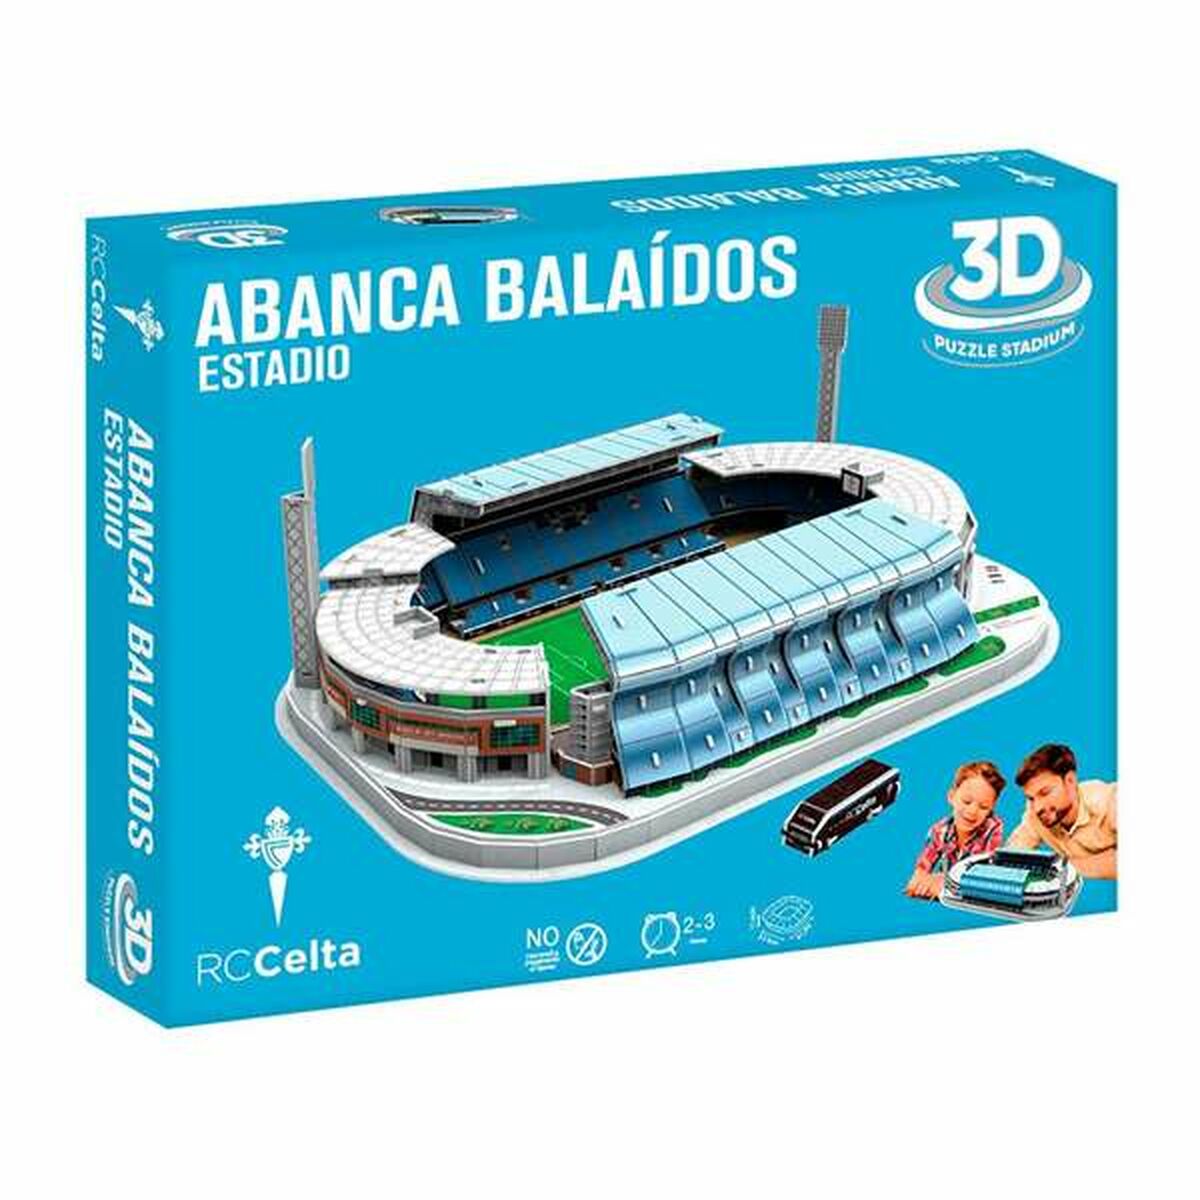 Puzzle 3D Bandai Abanca Balaídos RC Celta de Vigo Stadio Football